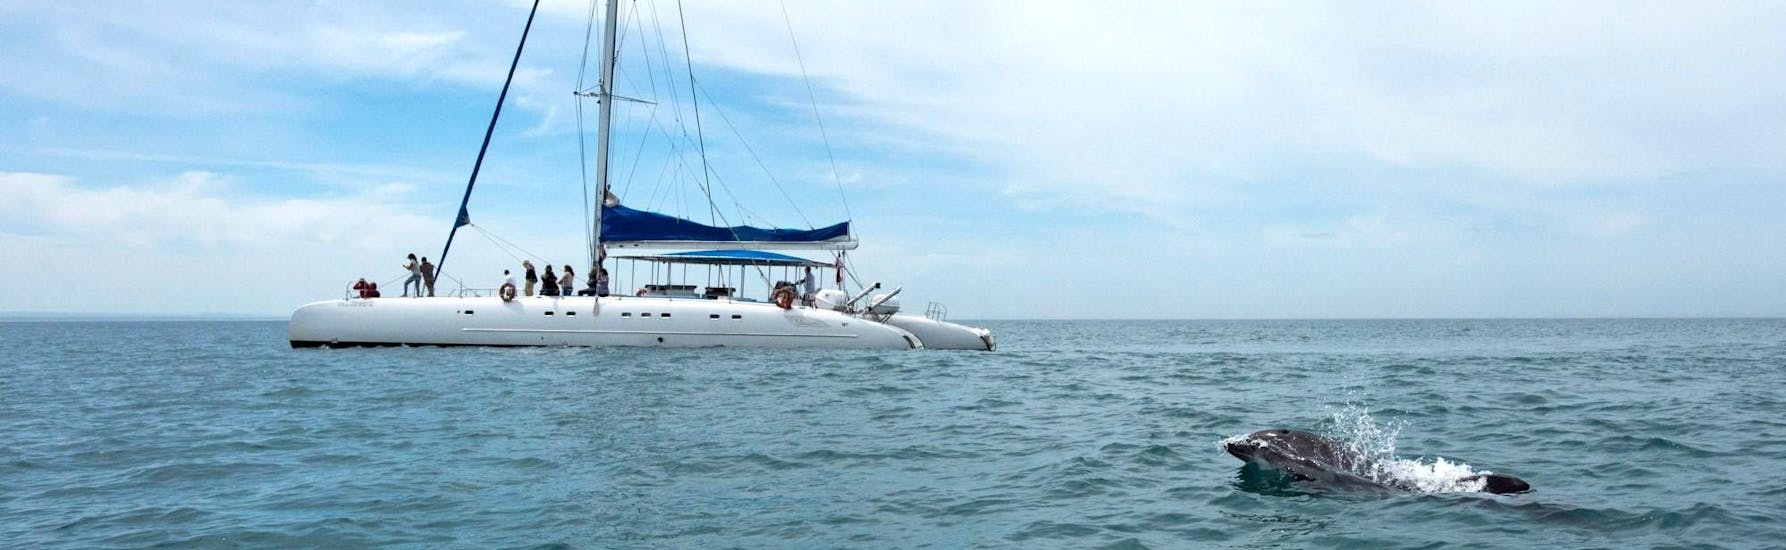 The catamaran of Vertigem Azul navigating in the Sado river.